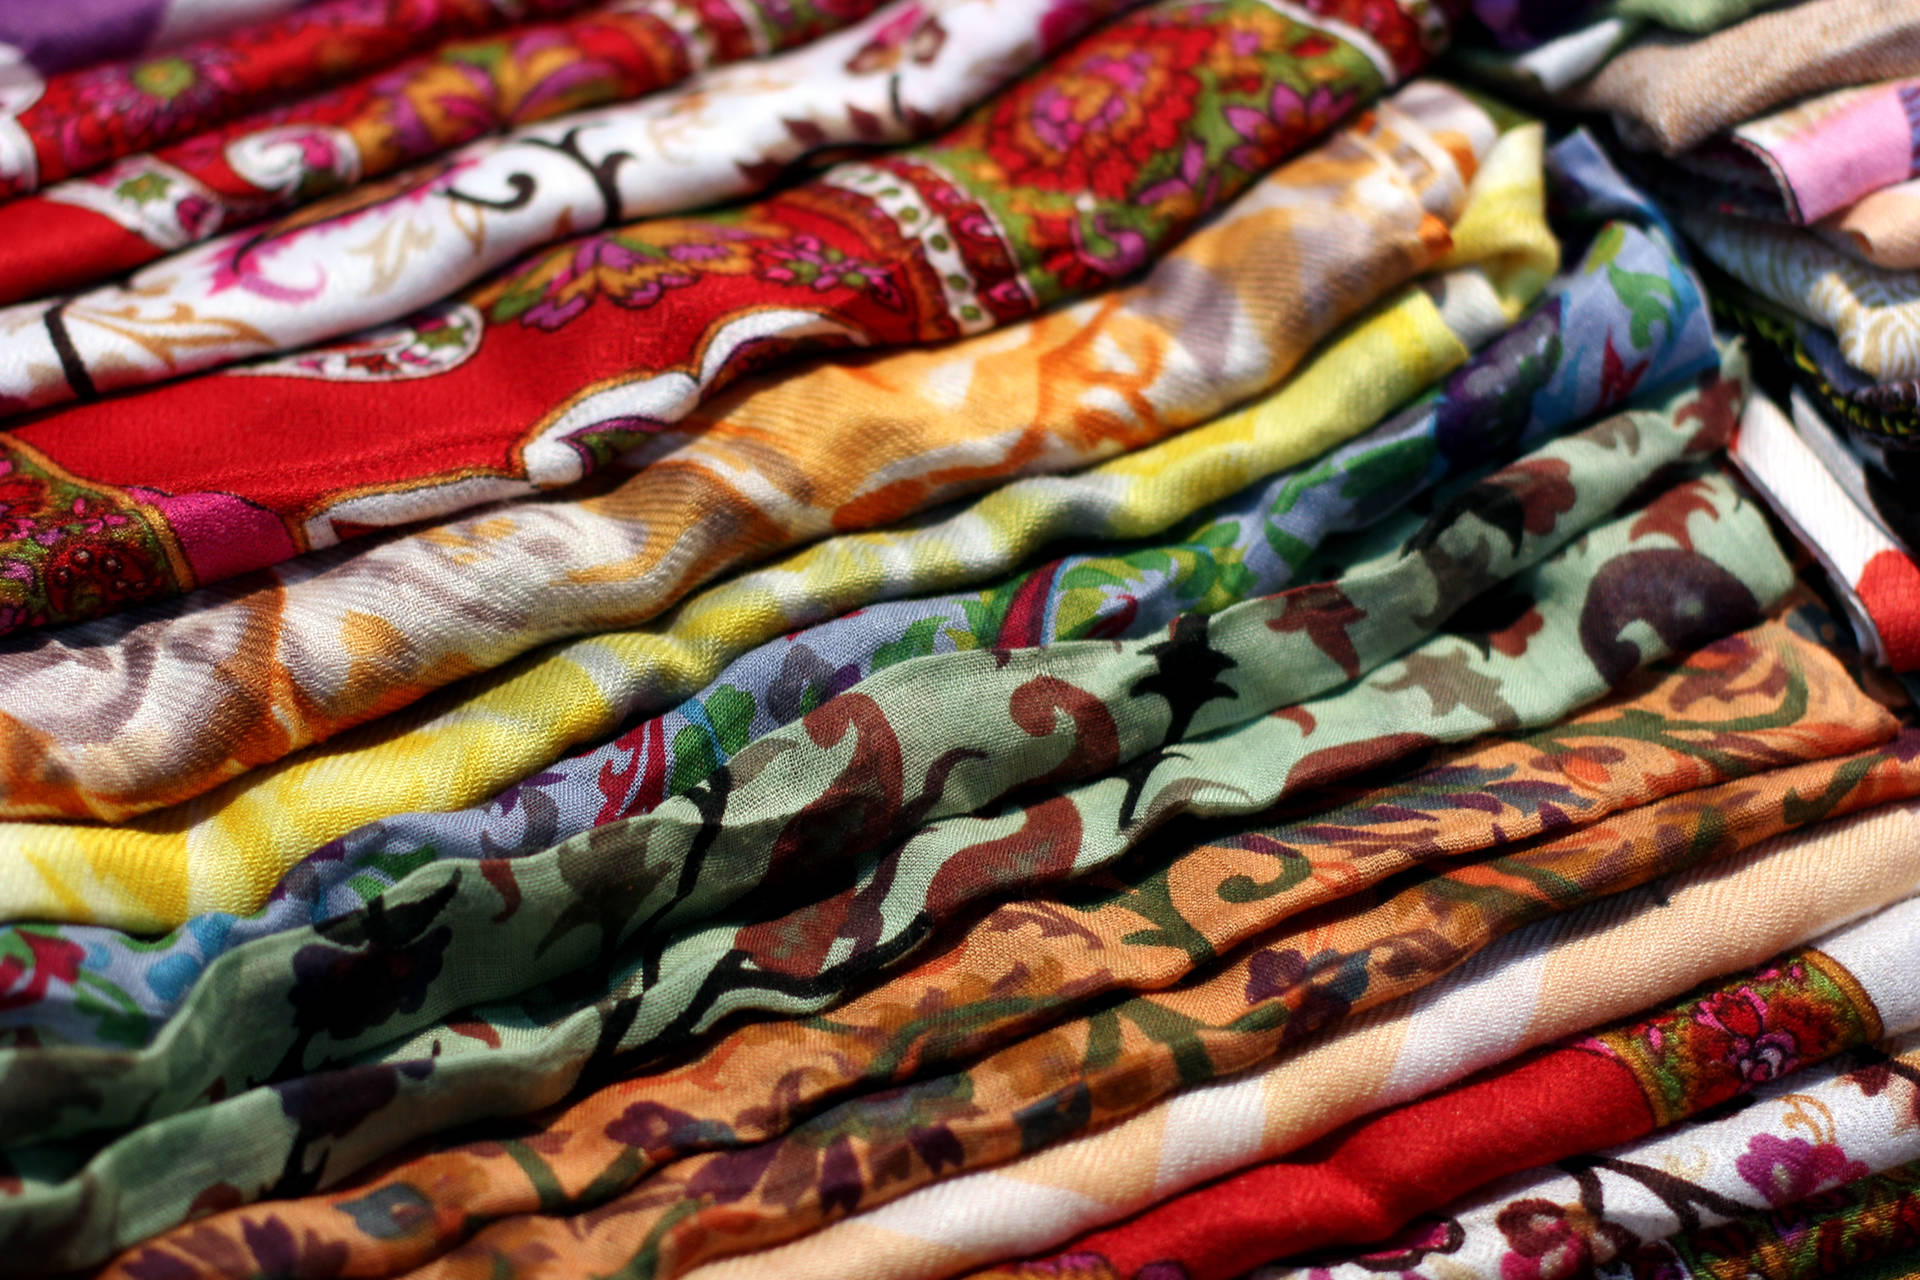 Текстильная промышленность предлагает огромное разнообразие тканей.